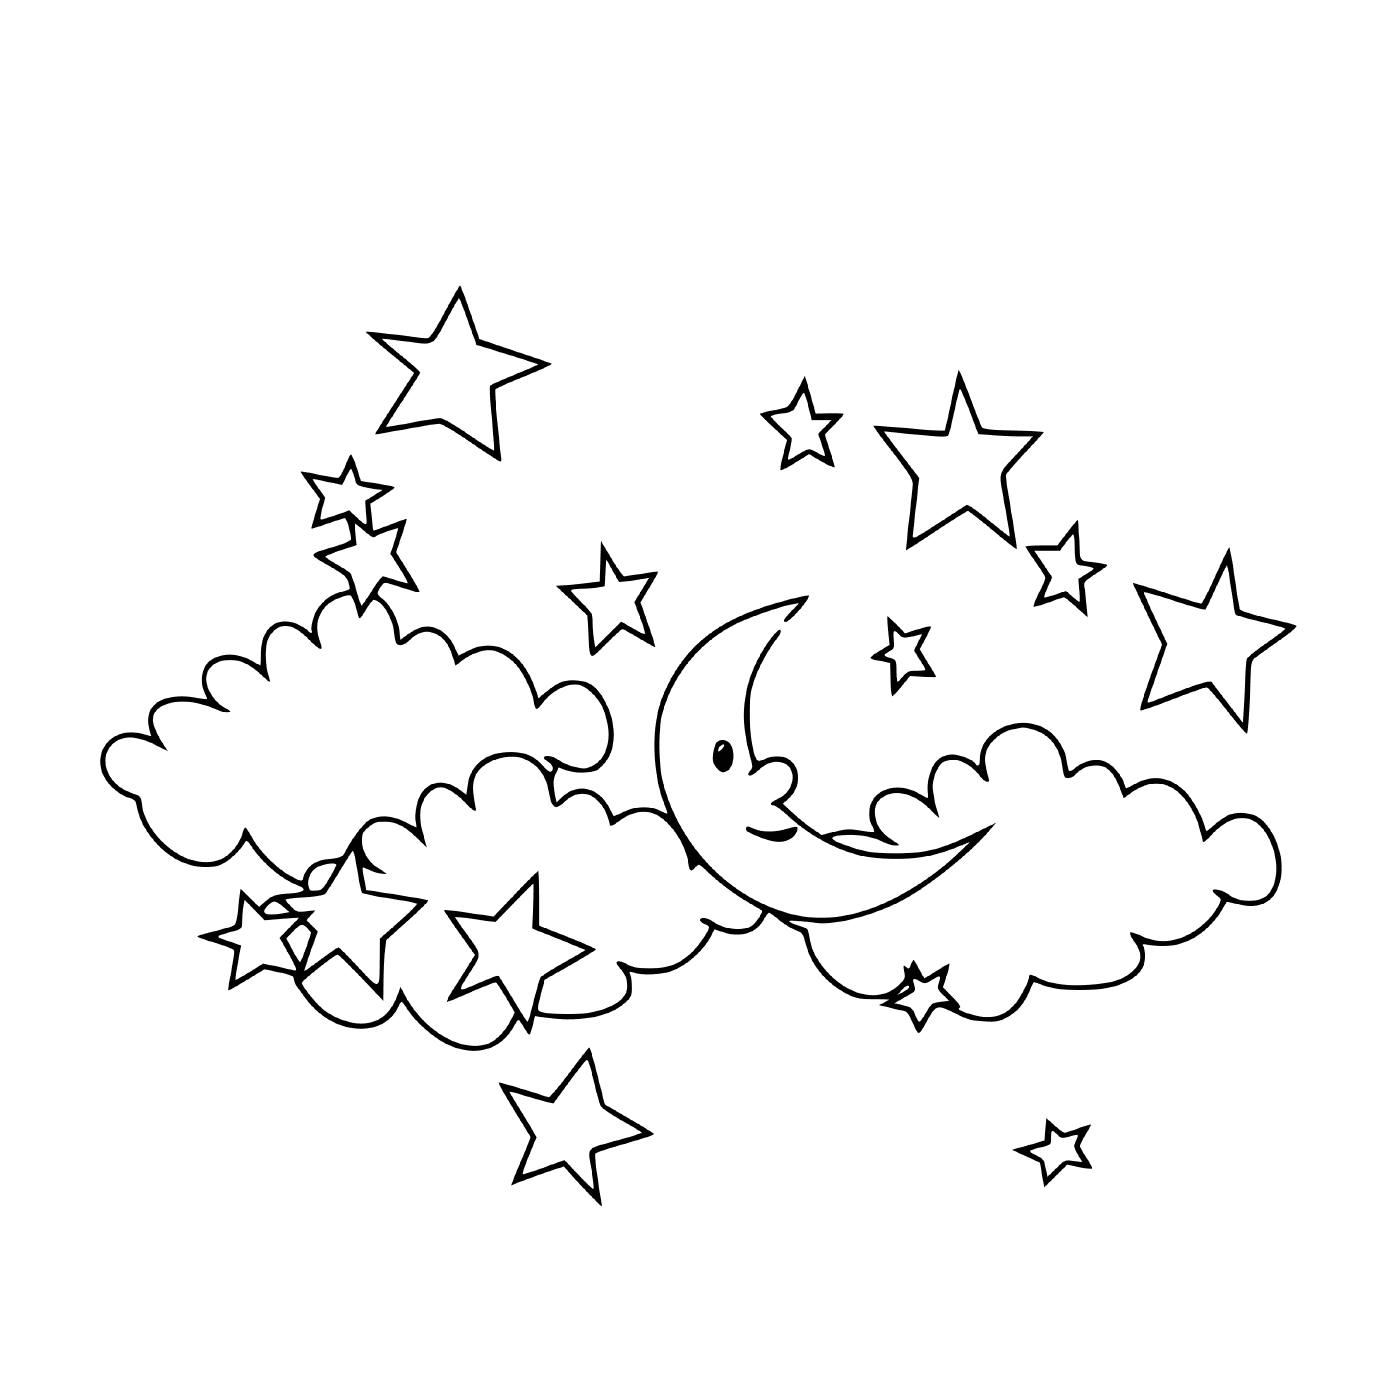   Une lune et des étoiles dans le ciel 